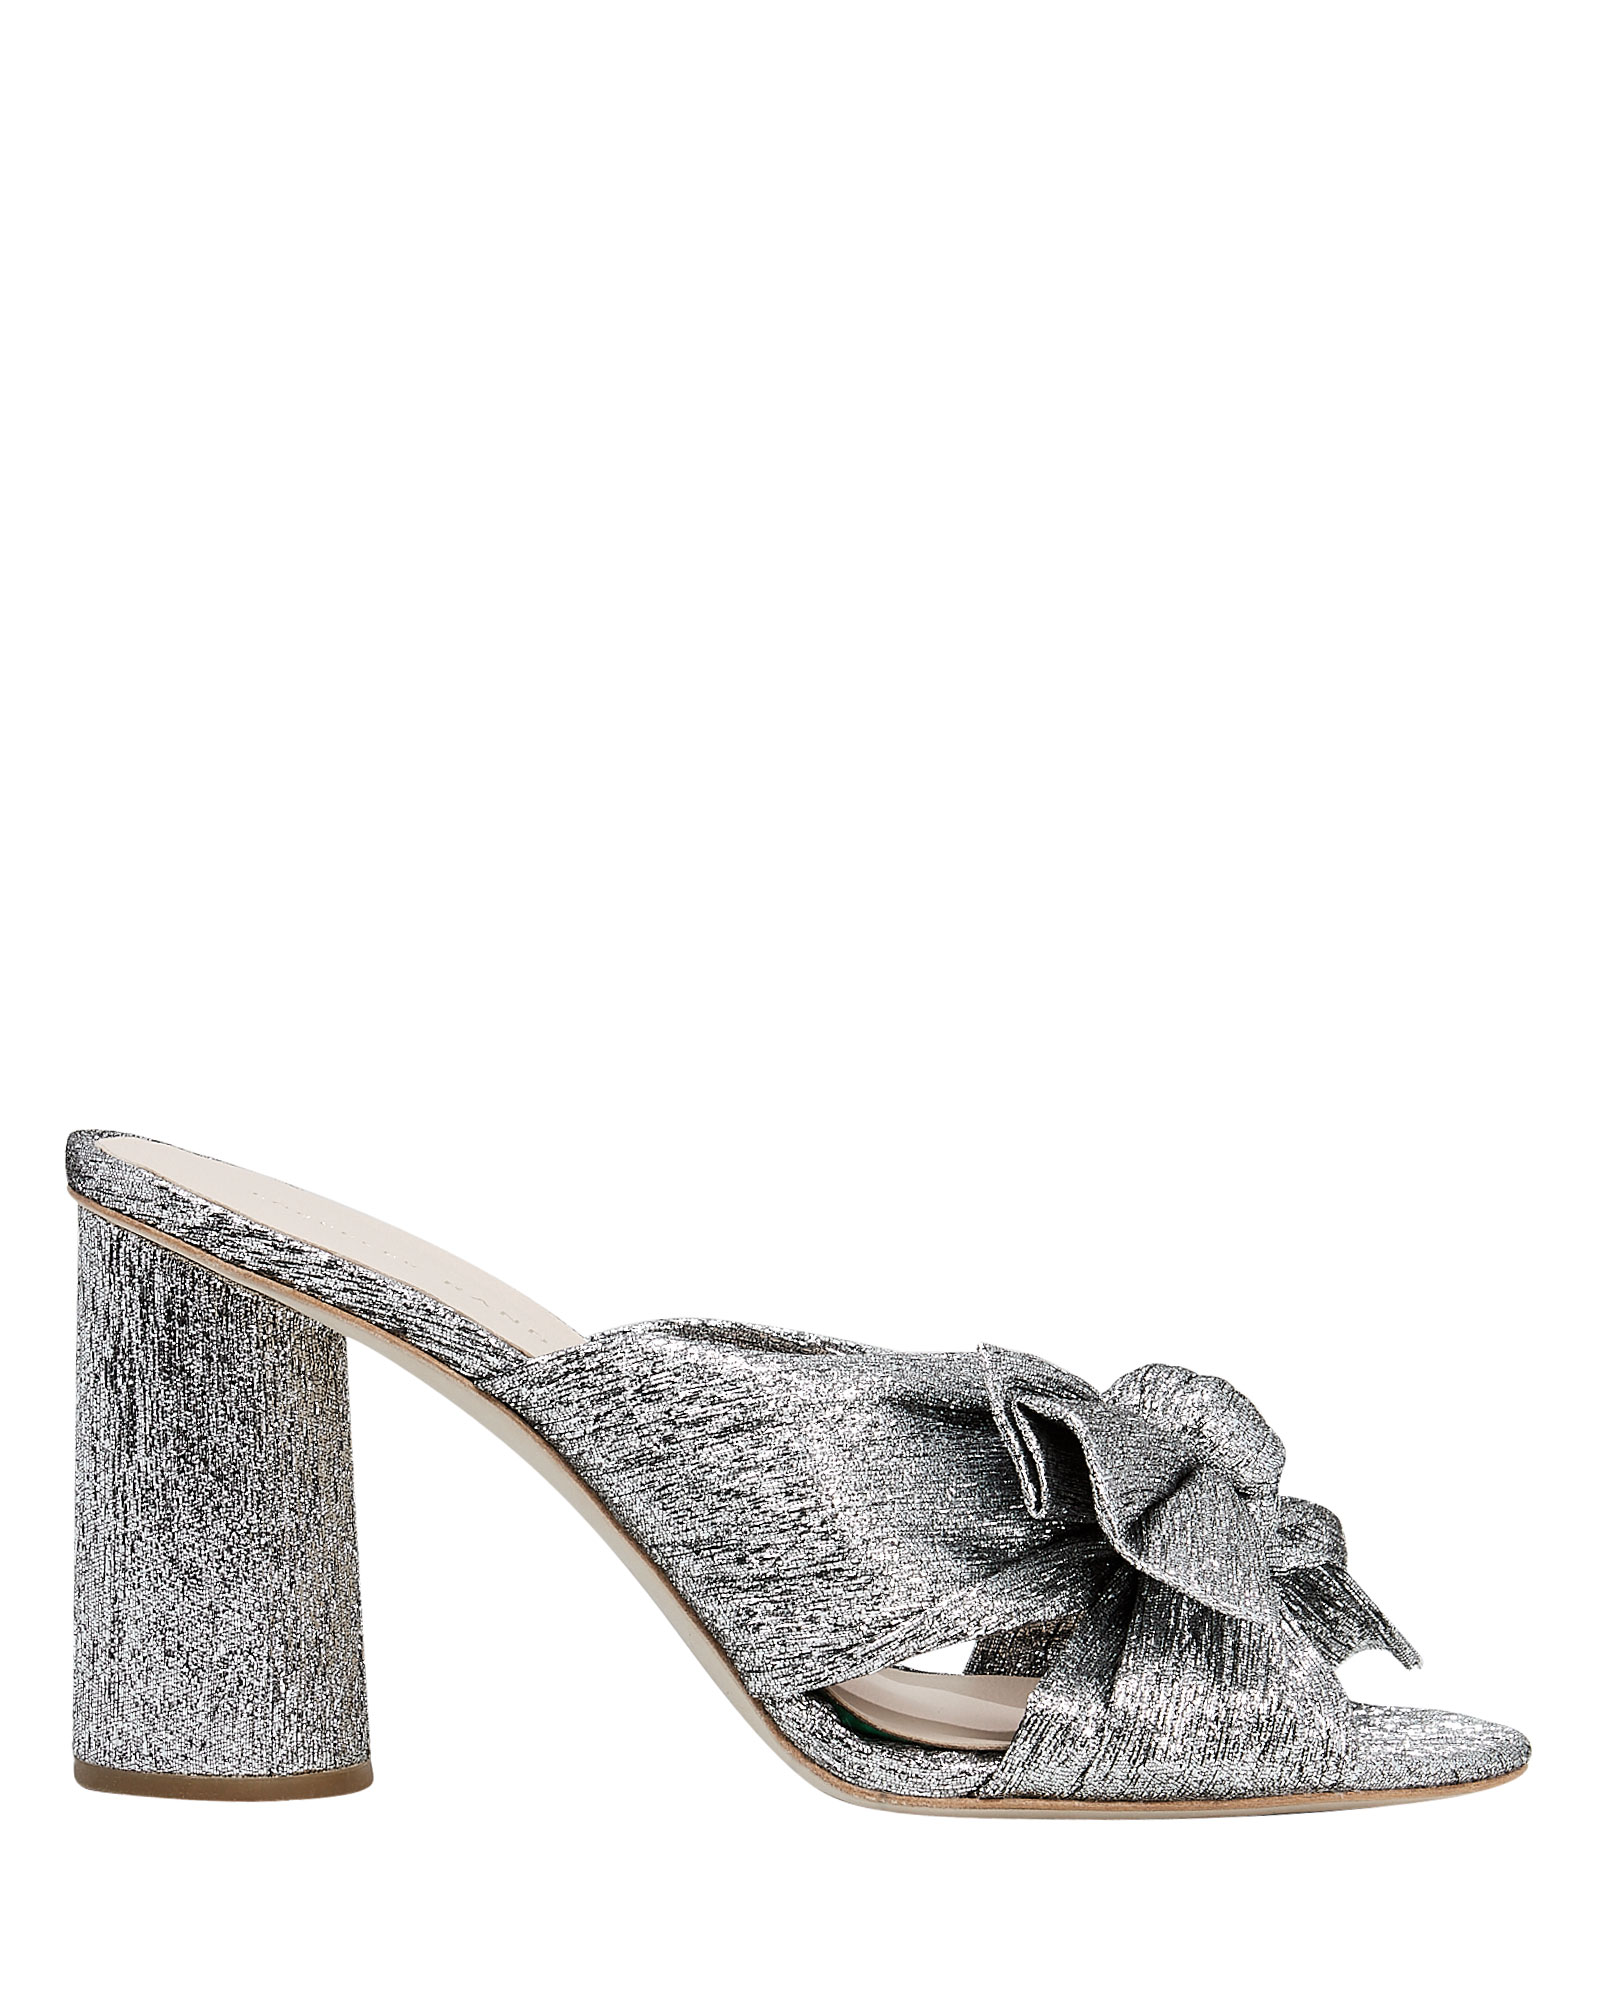 Women's Silver Metallic Block Heel Slide Sandals | Loeffler Randall